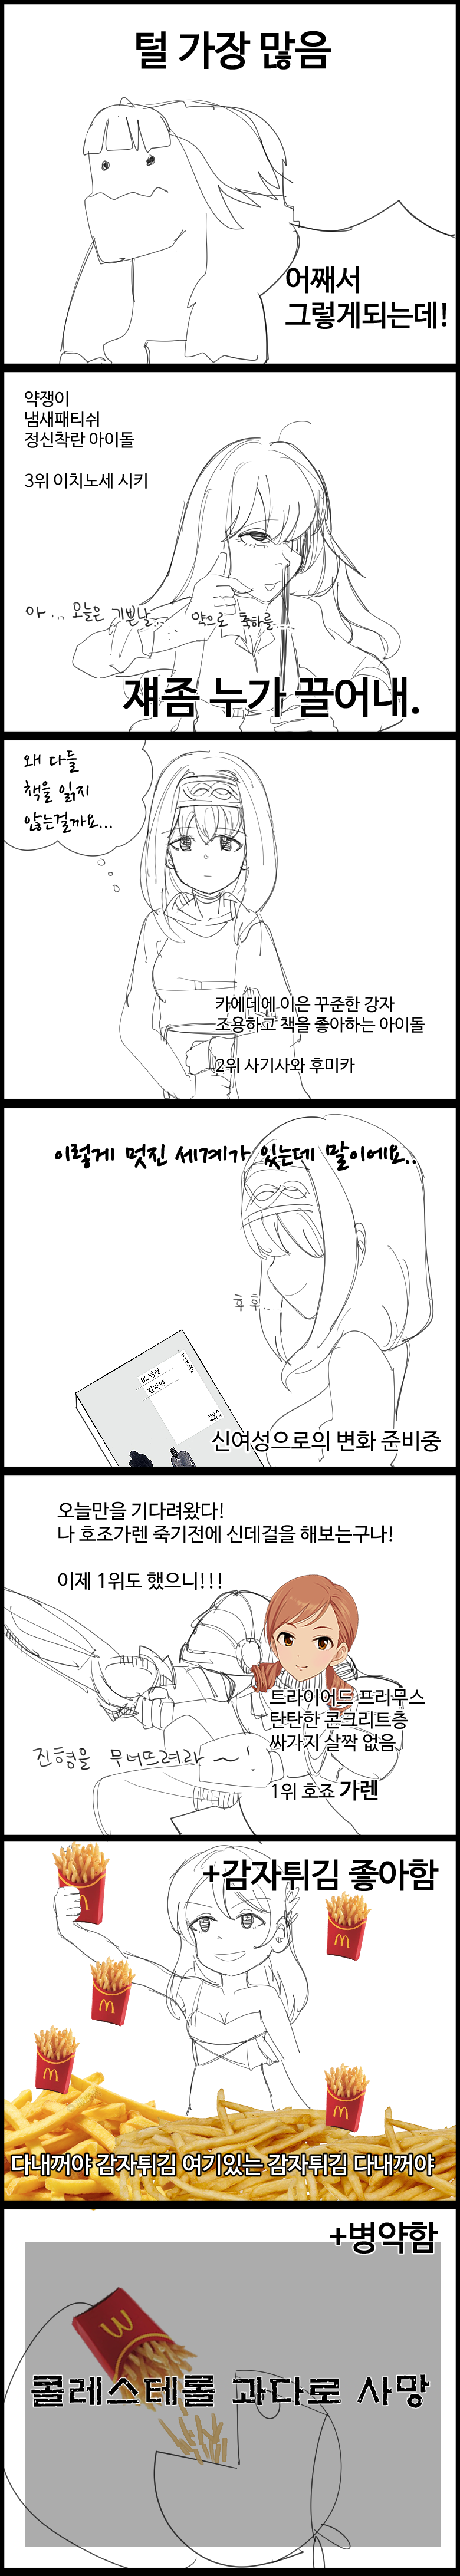 총선9회만화2.png